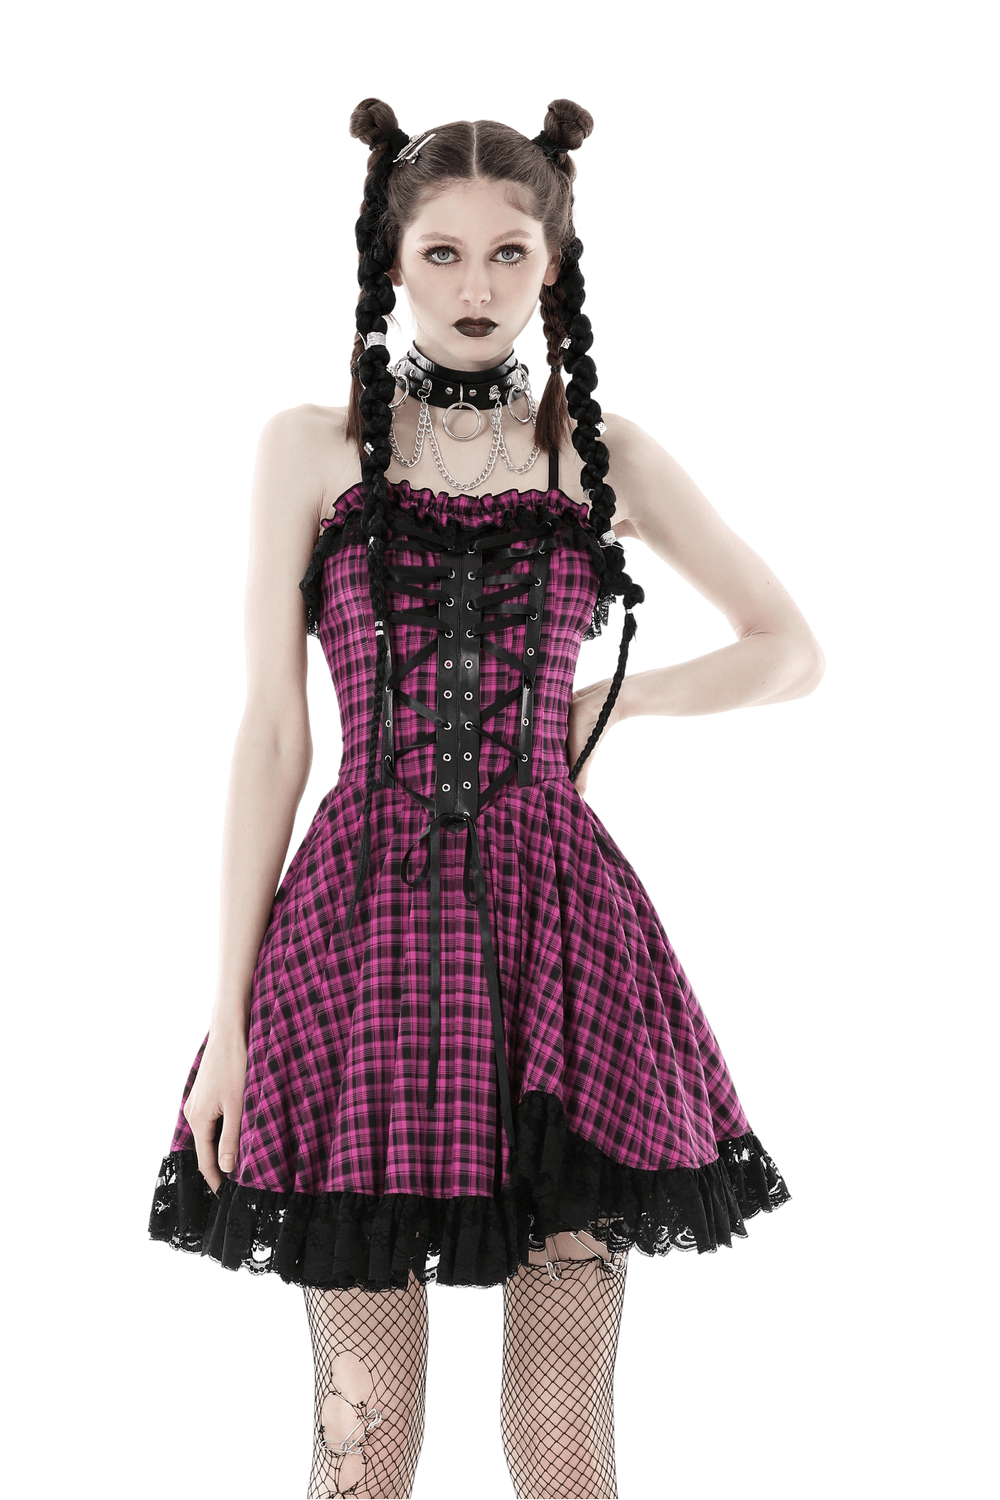 Gothic Punk Plaid Lace-Up Dress with Ruffled Hem